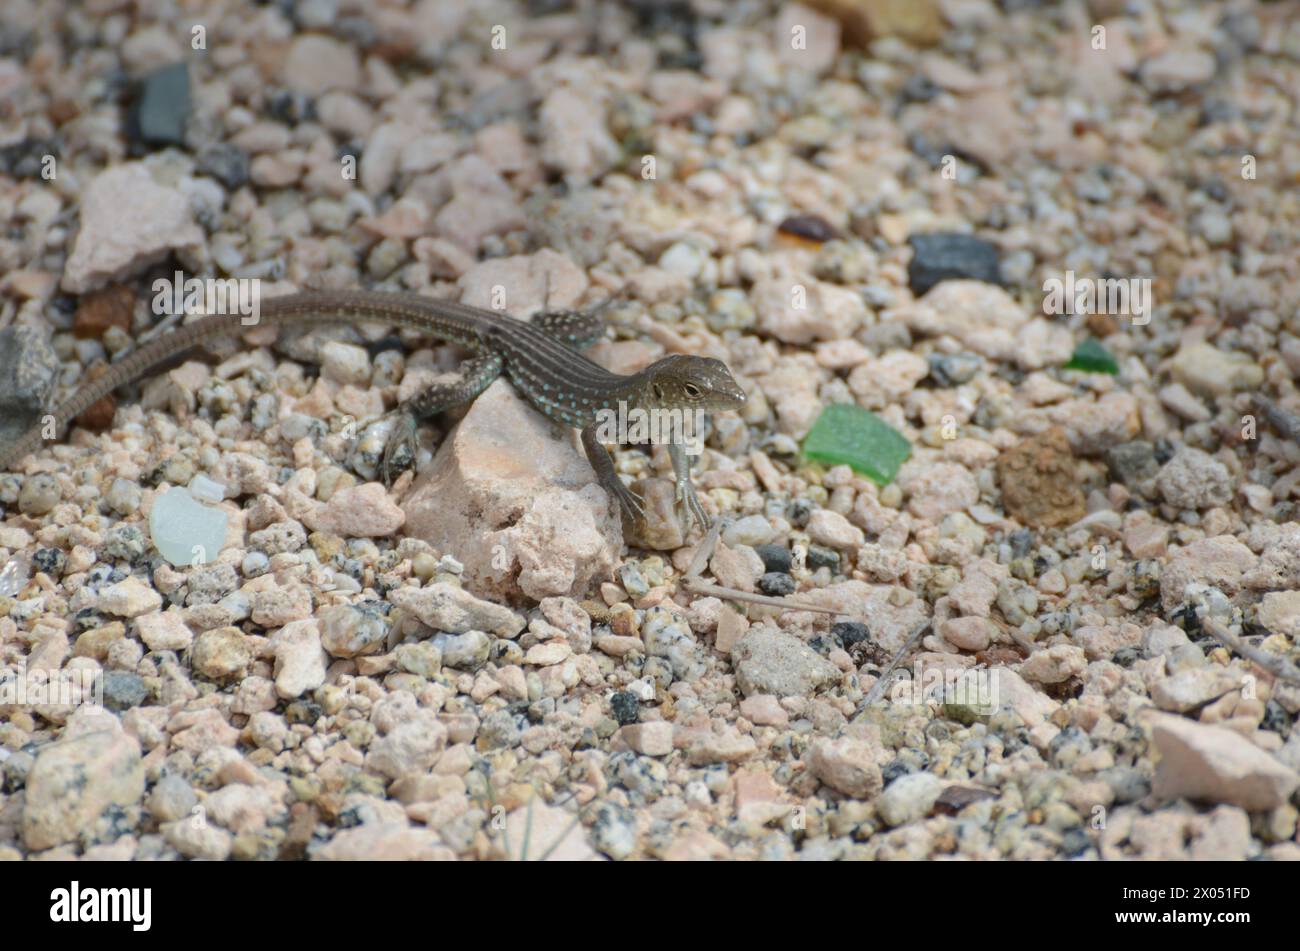 Un lagarto está en una roca en un desierto. El lagarto es pequeño y marrón. La roca es grande y gris Foto de stock